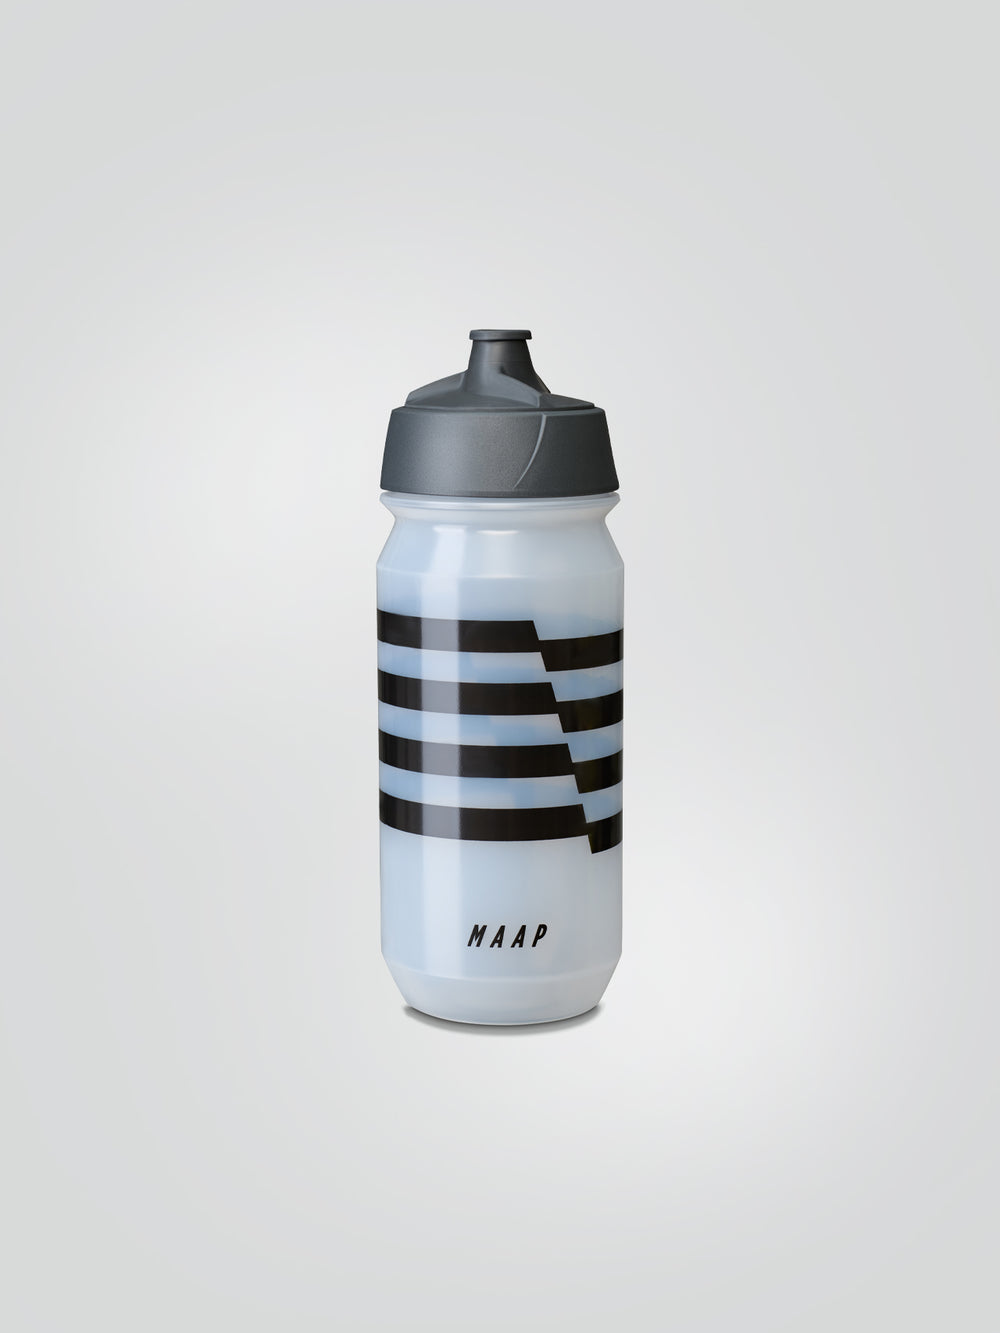 Product Image for Emblem Bottle